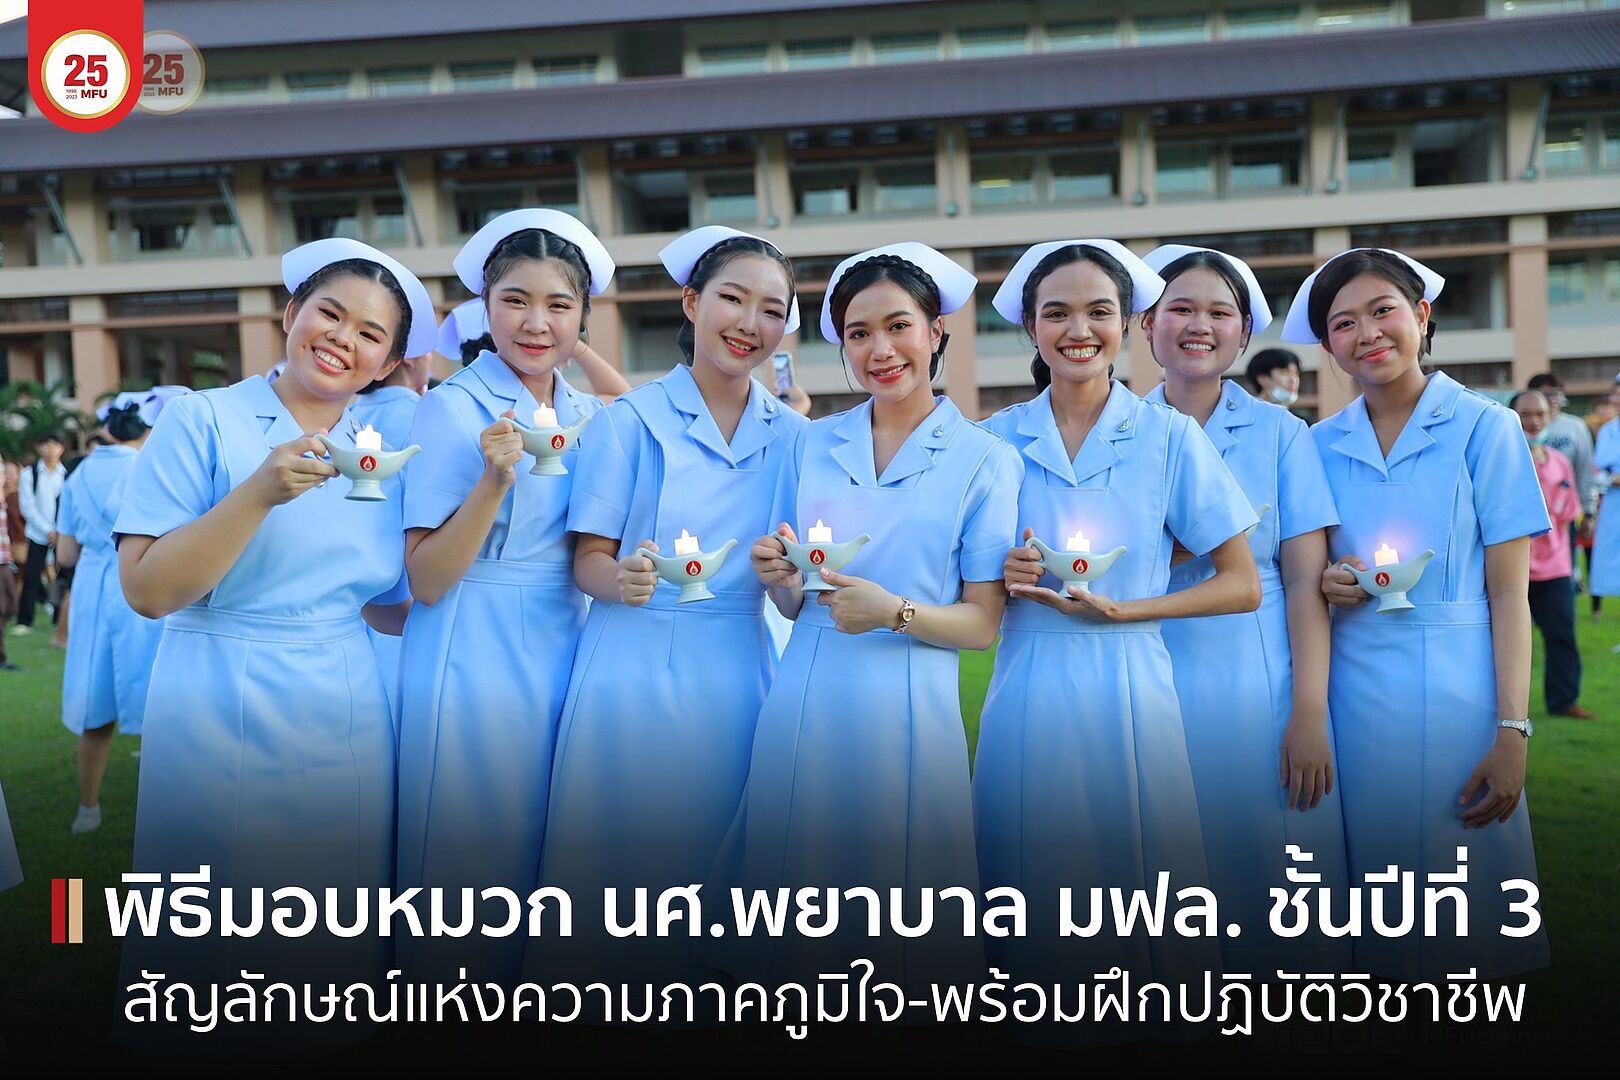 สนว. พยาบาลศาสตร์ มฟล. จัดพิธีมอบหมวก ดวงประทีปและเข็มชั้นปี ให้แก่นักศึกษาพยาบาลชั้นปีที่ 3 ปีการศึกษา 2565